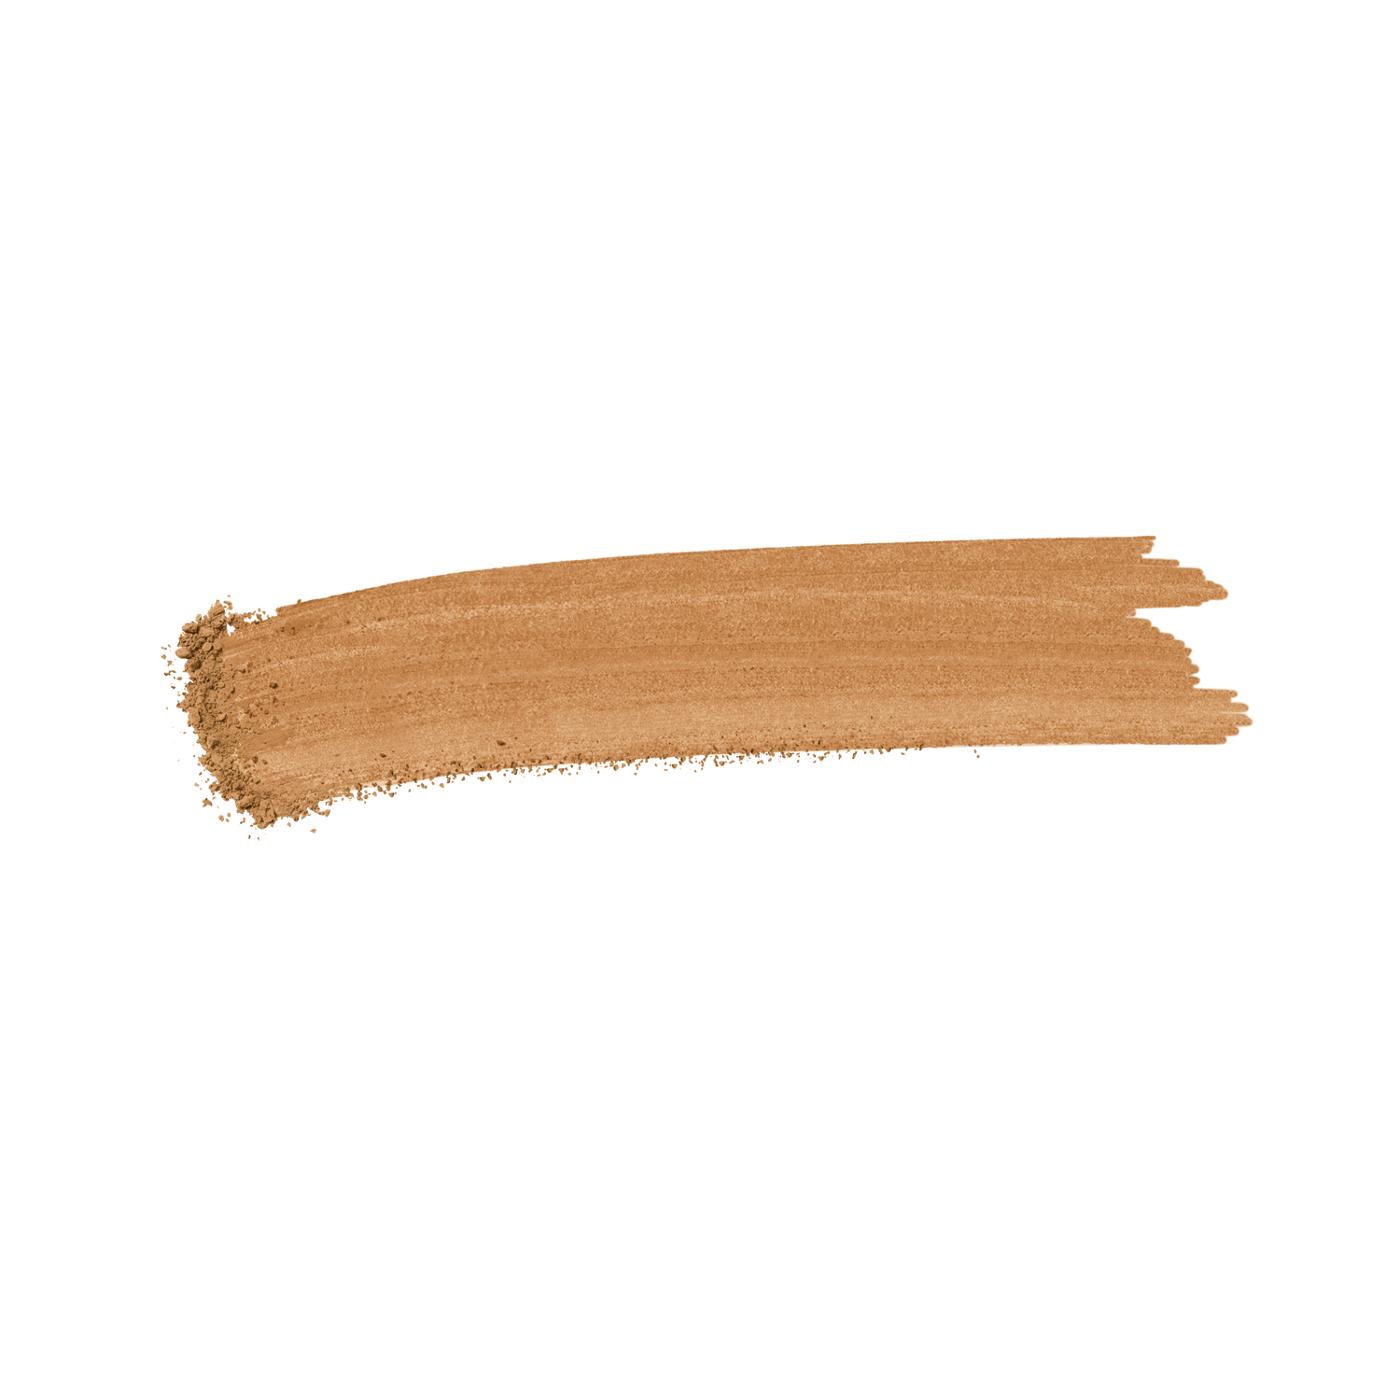 L'Oréal Paris True Match Super-Blendable Oil Free Makeup Powder Caramel Beige; image 2 of 6